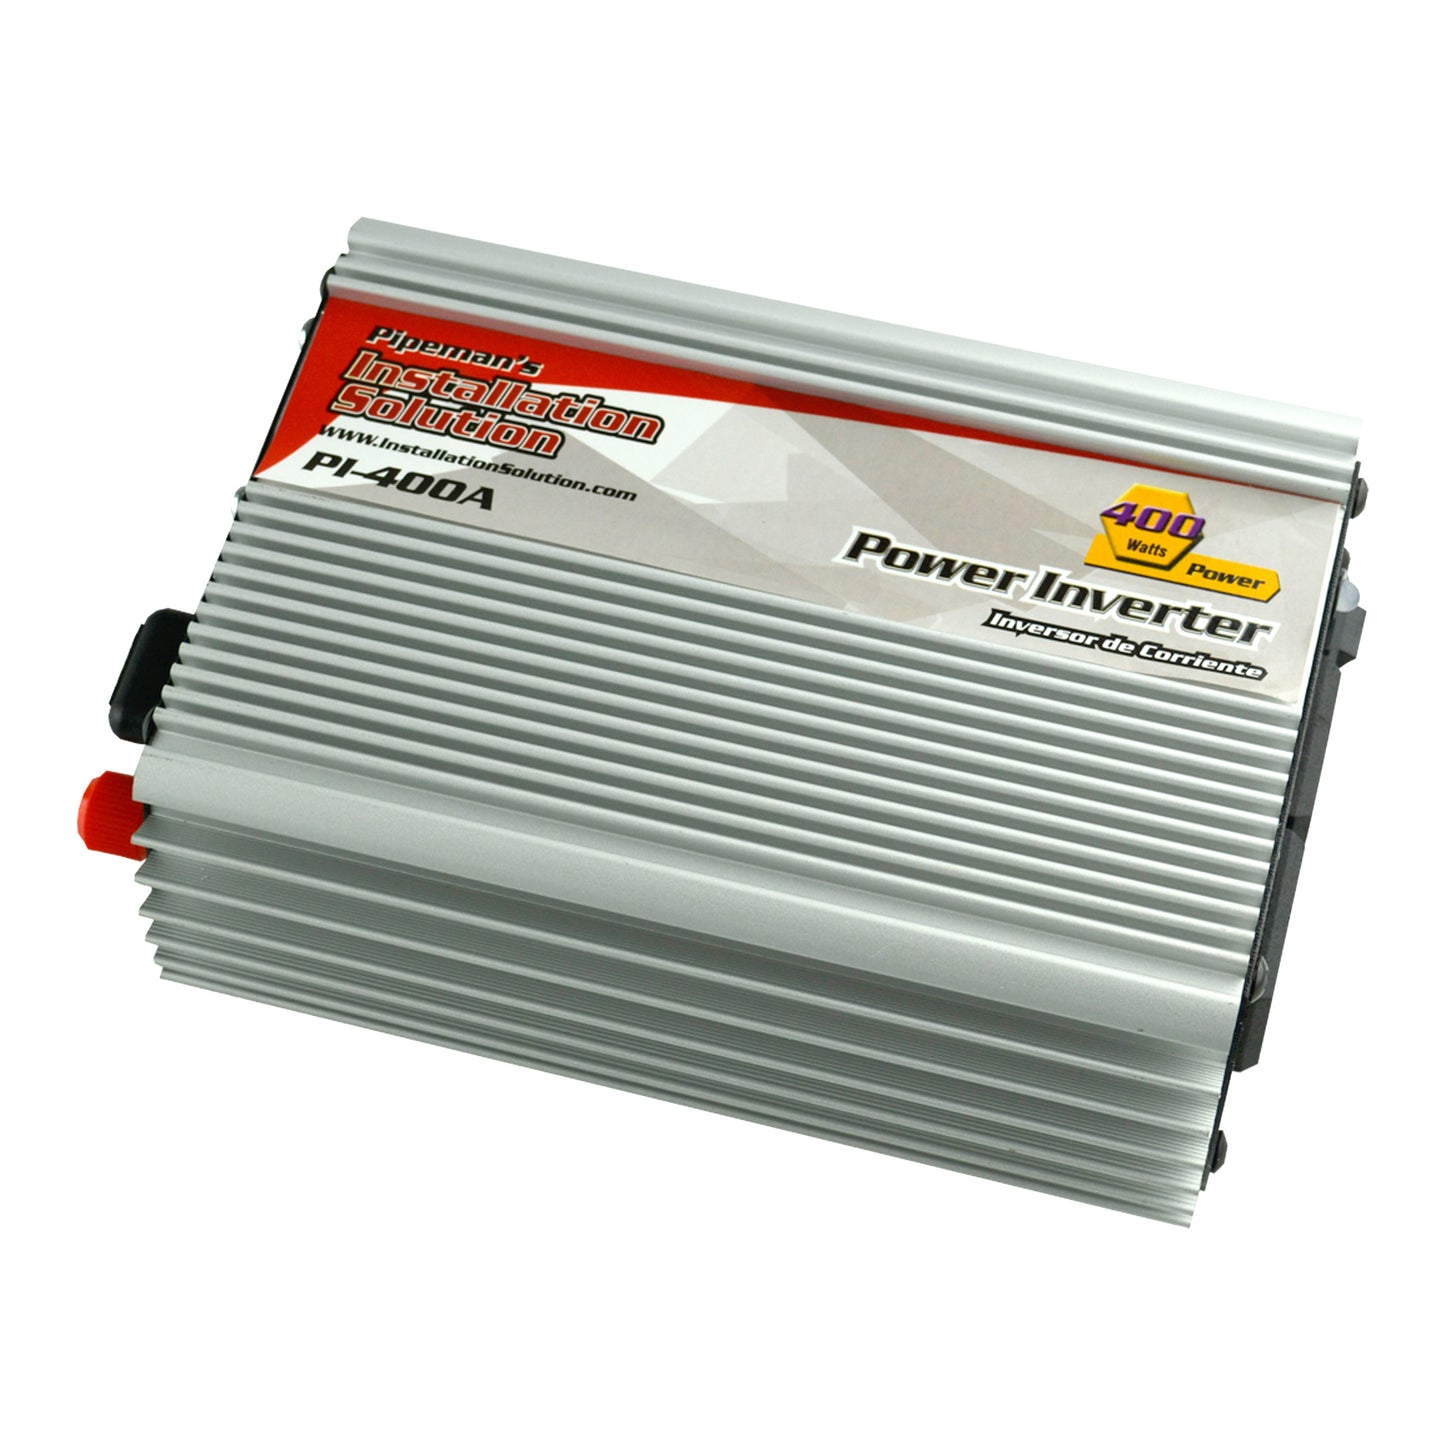 PI-400A - 400 Watts 12V DC to 110V AC Power Inverter